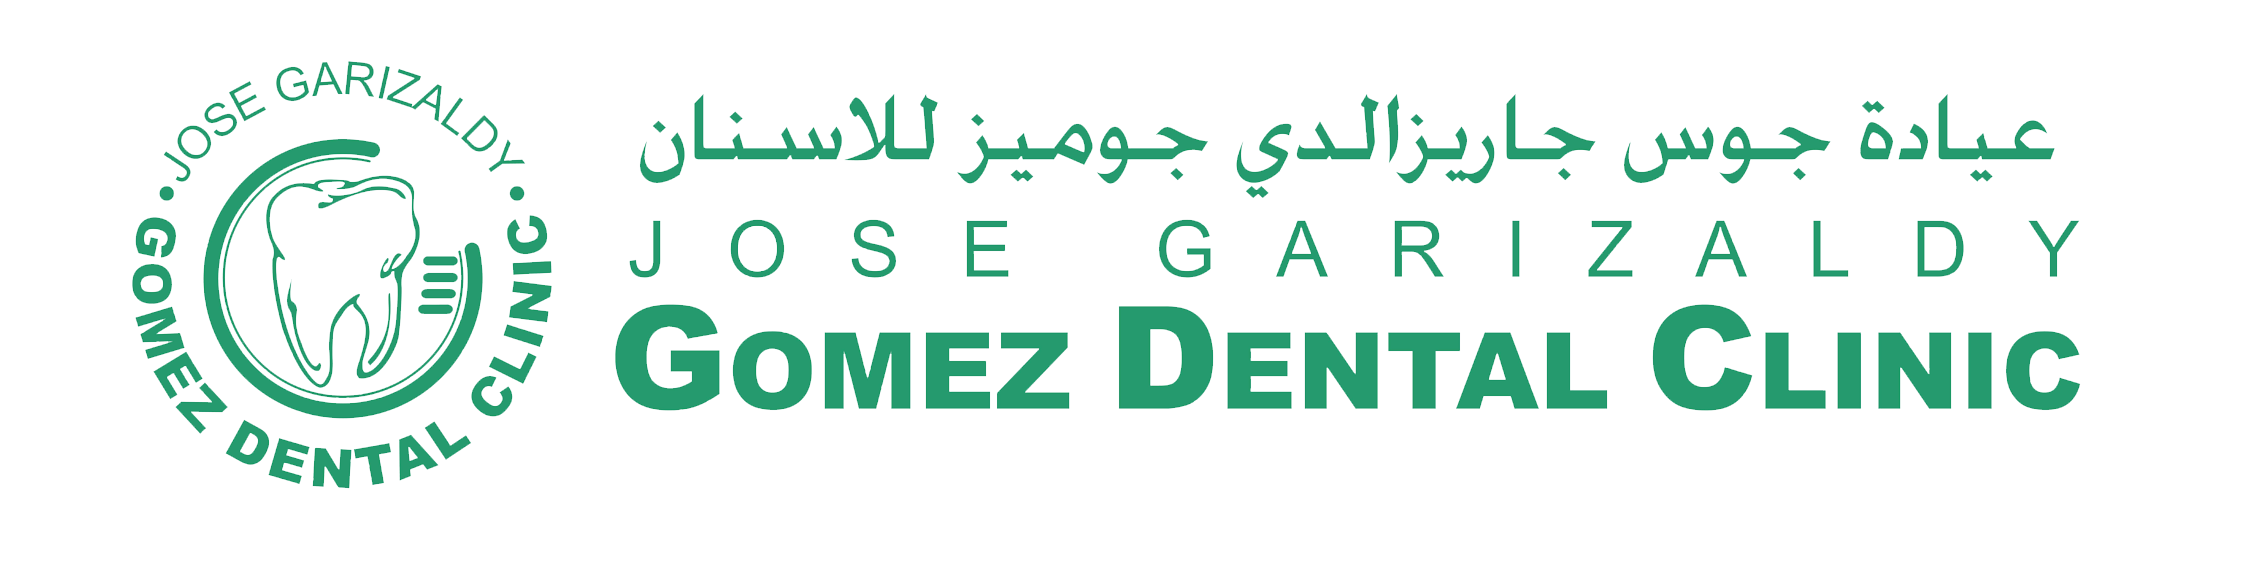 Gomez Dental Clinic